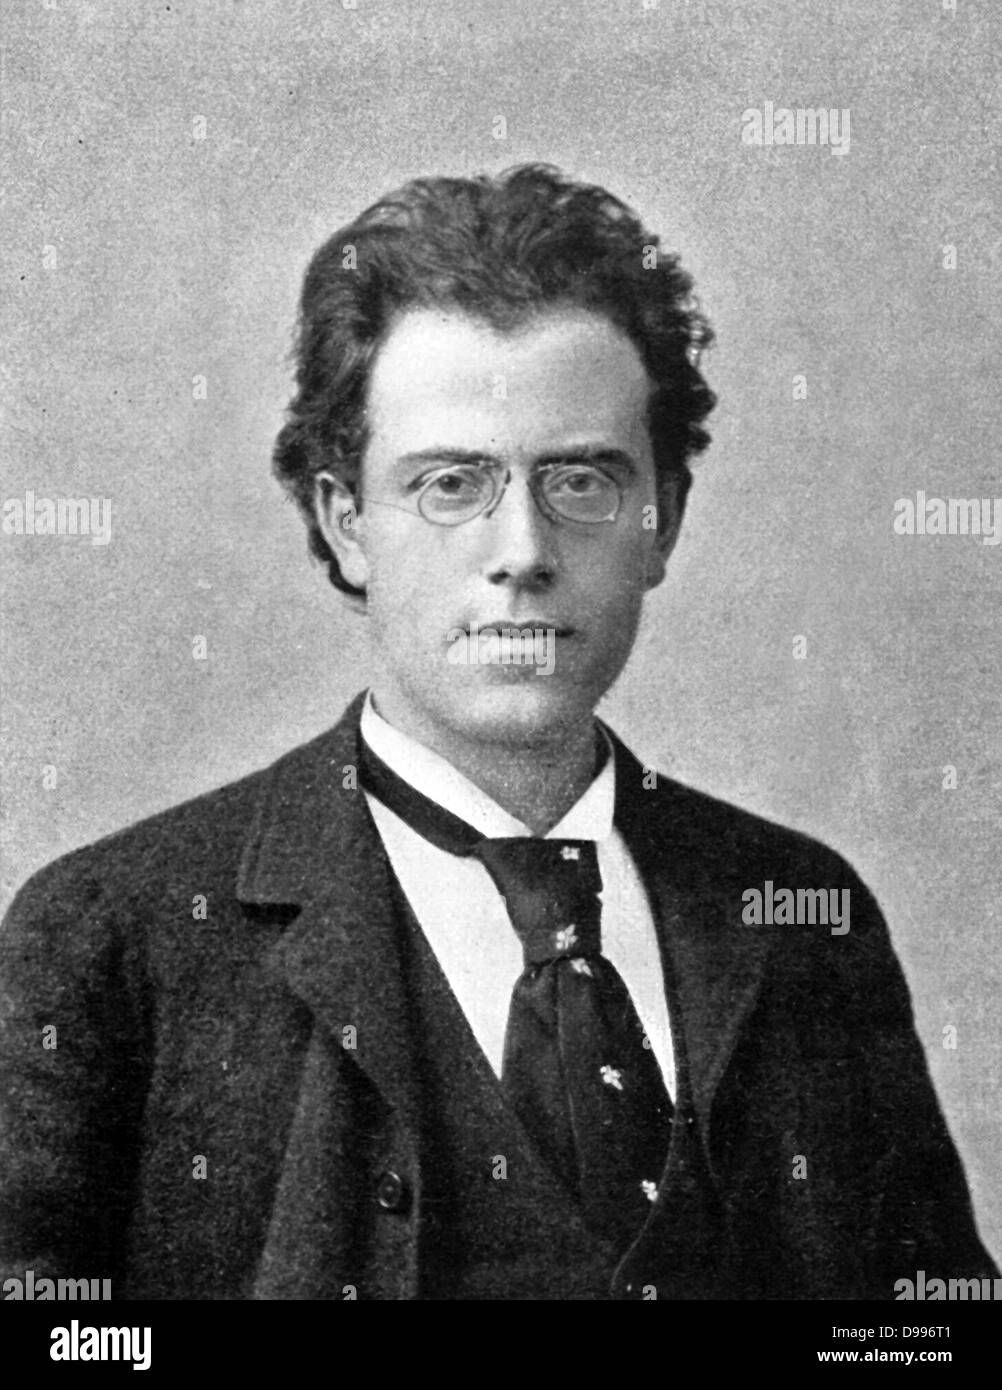 Gustav Mahler 1860 - 1911) spät-romantische österreichische Komponist und einer der führenden Dirigenten seiner Generation. Als Komponist war er als Brücke zwischen dem 19. Jahrhundert österreichisch-deutschen Tradition und Moderne des frühen 20. Jahrhunderts. Stockfoto